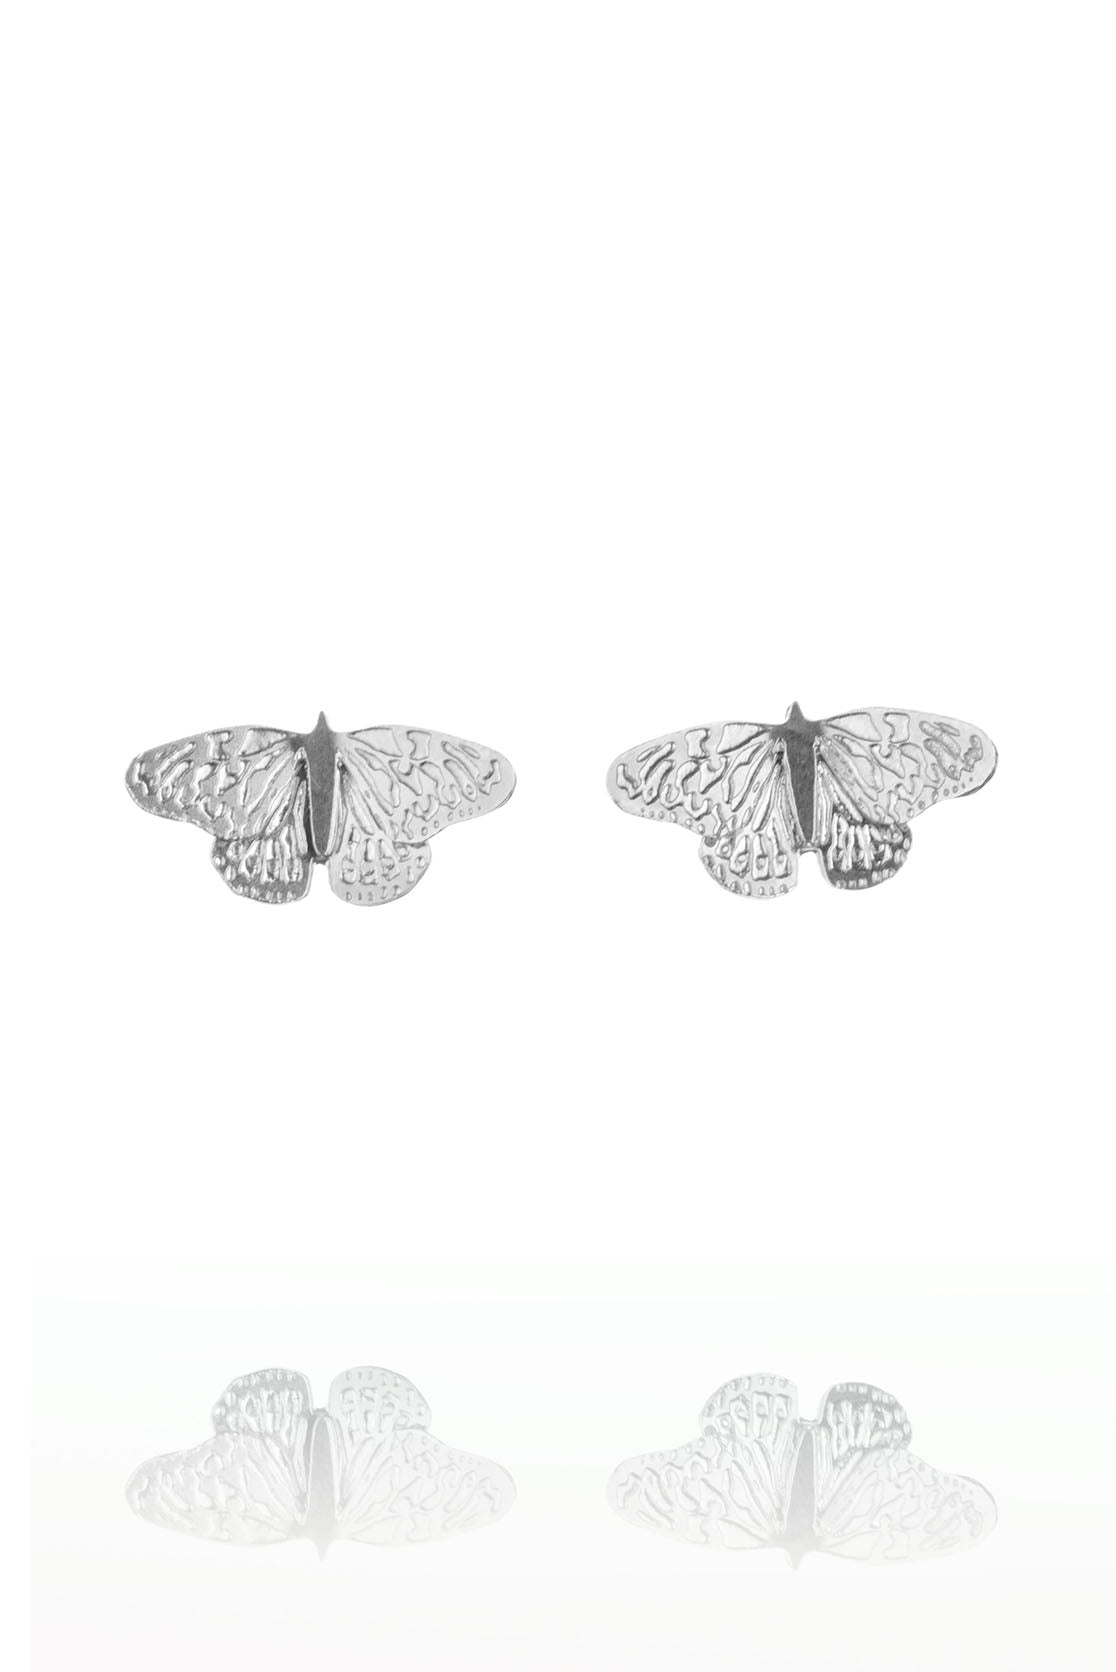 Butterfly Stud Earrings in Sterling Silver or Gold